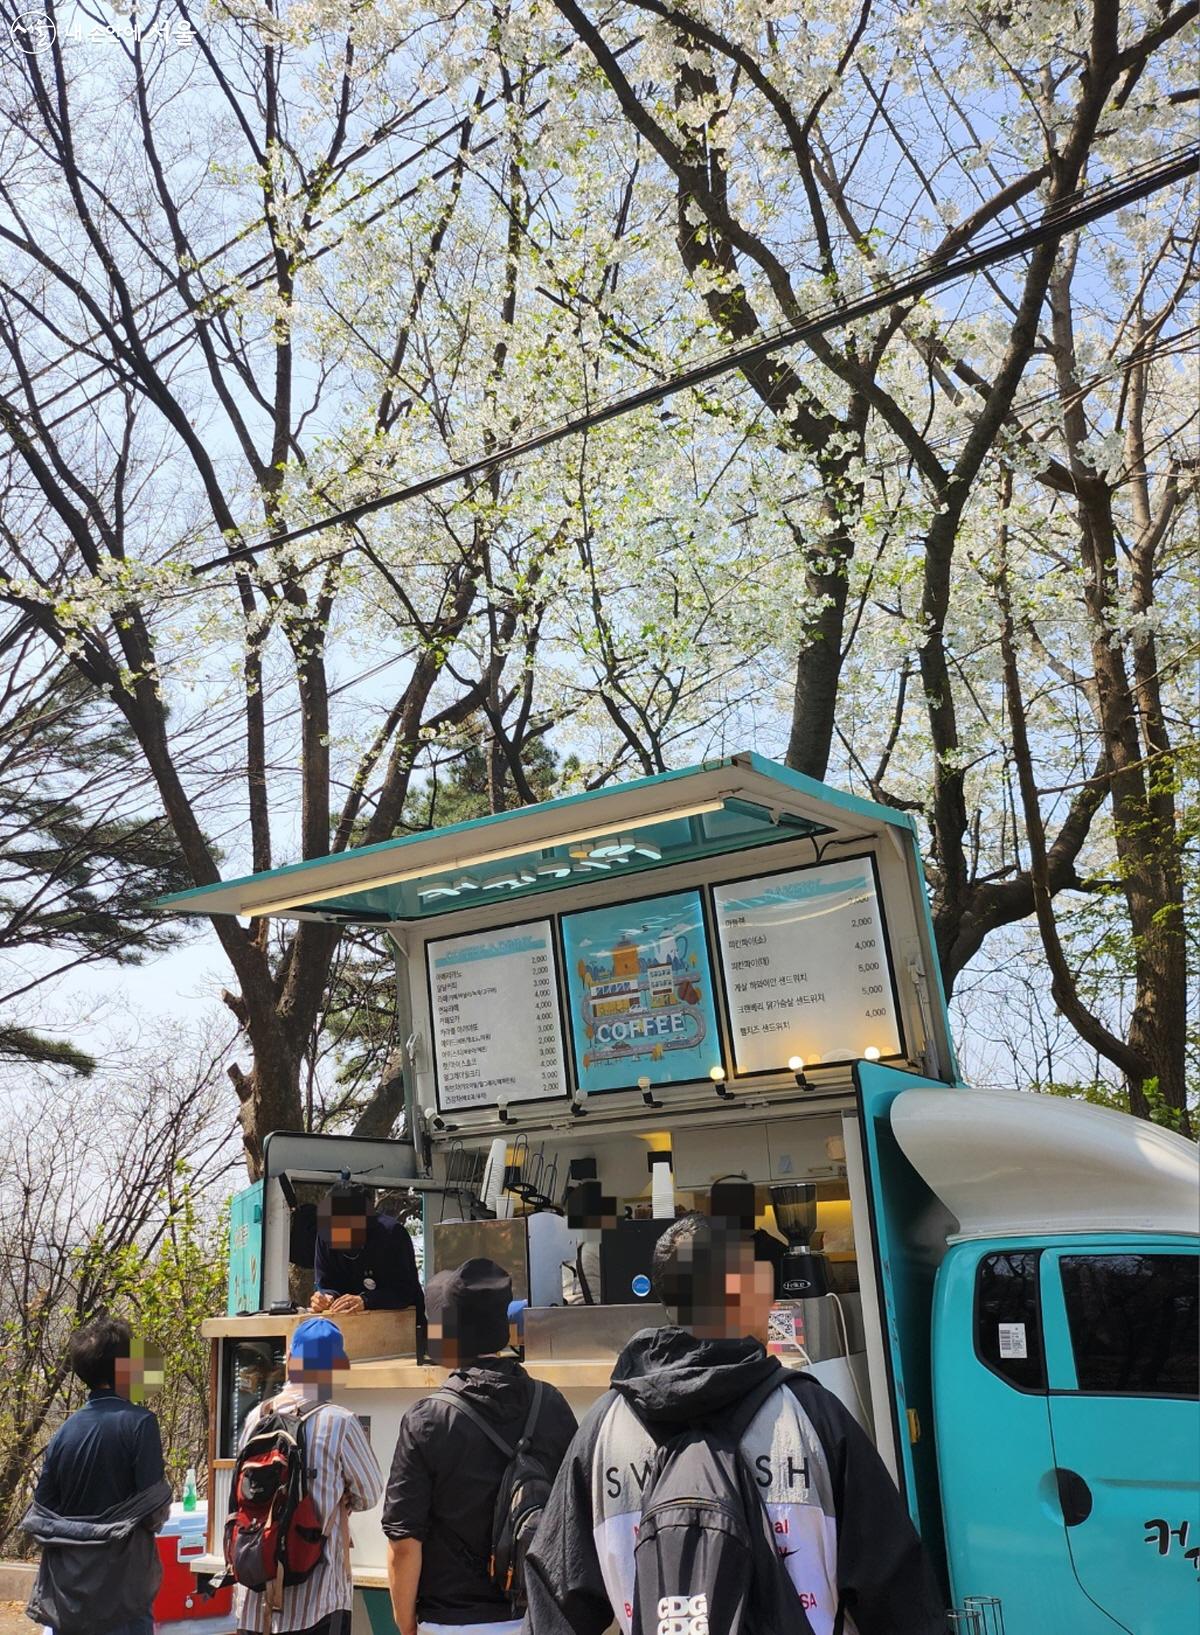 안산 자락길을 올라가는 길에 있는 커피차에서 간단한 요깃거리를 사 먹을 수 있다. ©김정원